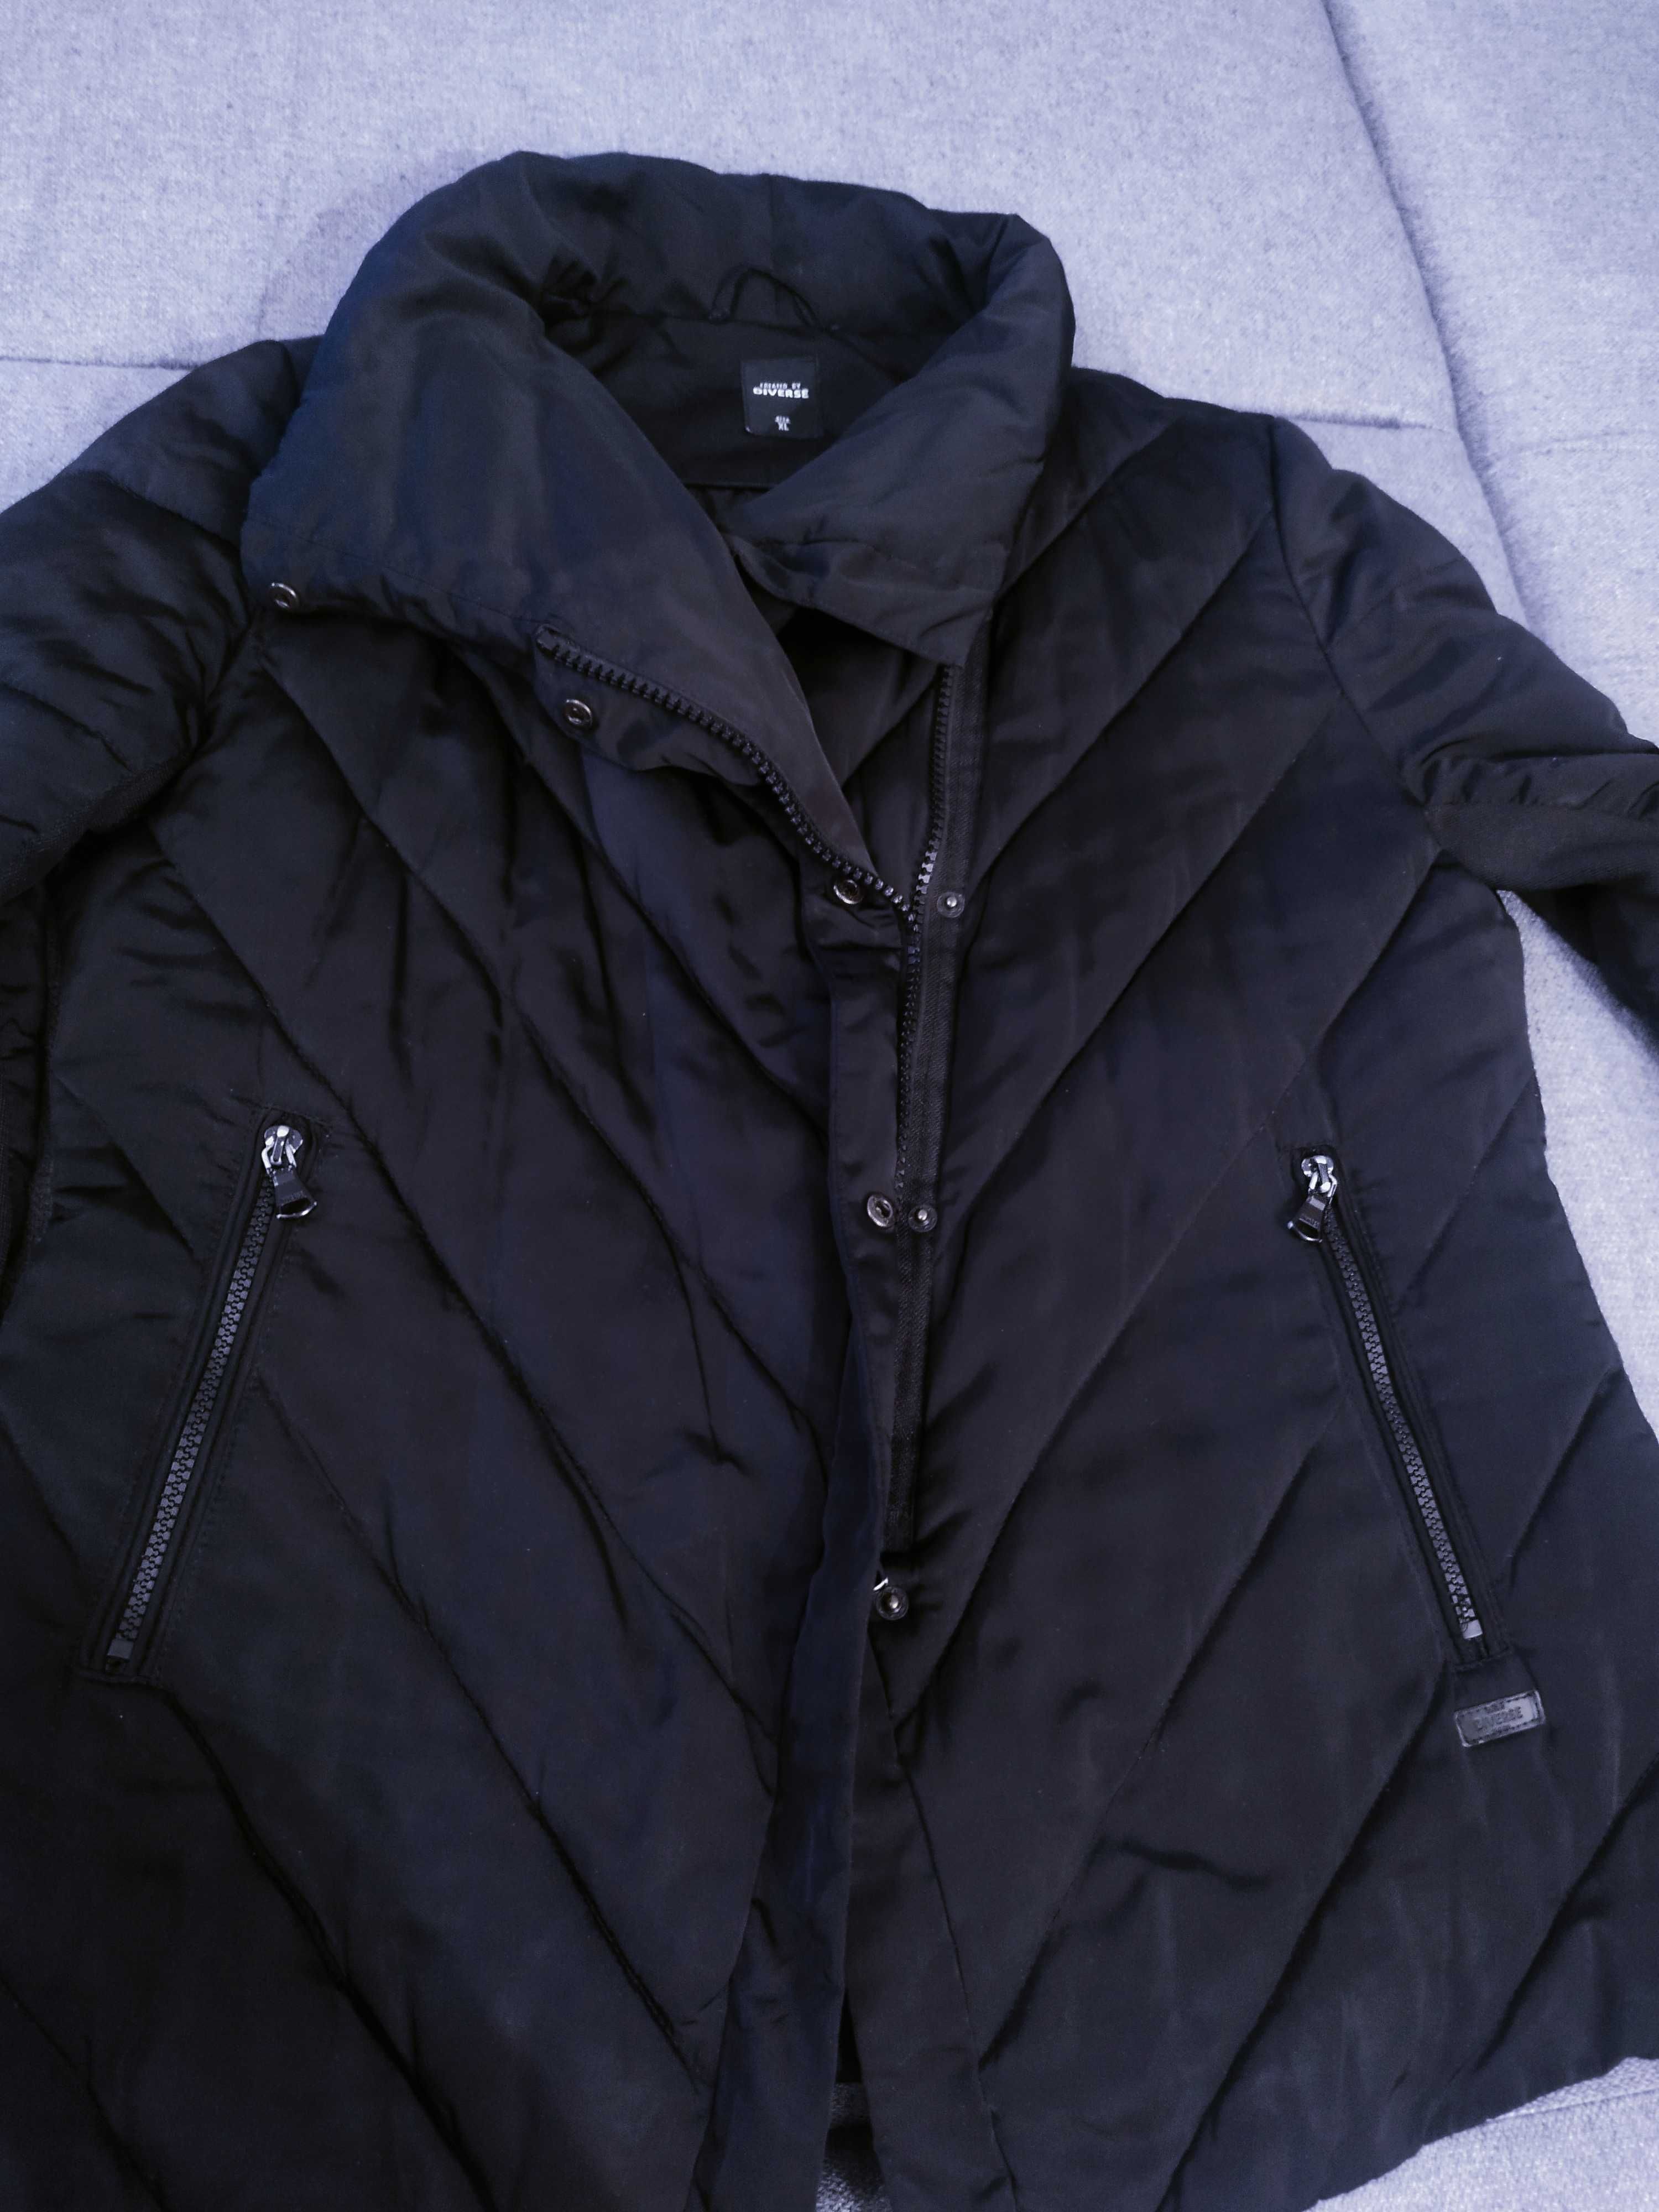 Sprzedam damską kurtkę Diverse w kolorze czarnym, rozmiar XL/42/44.